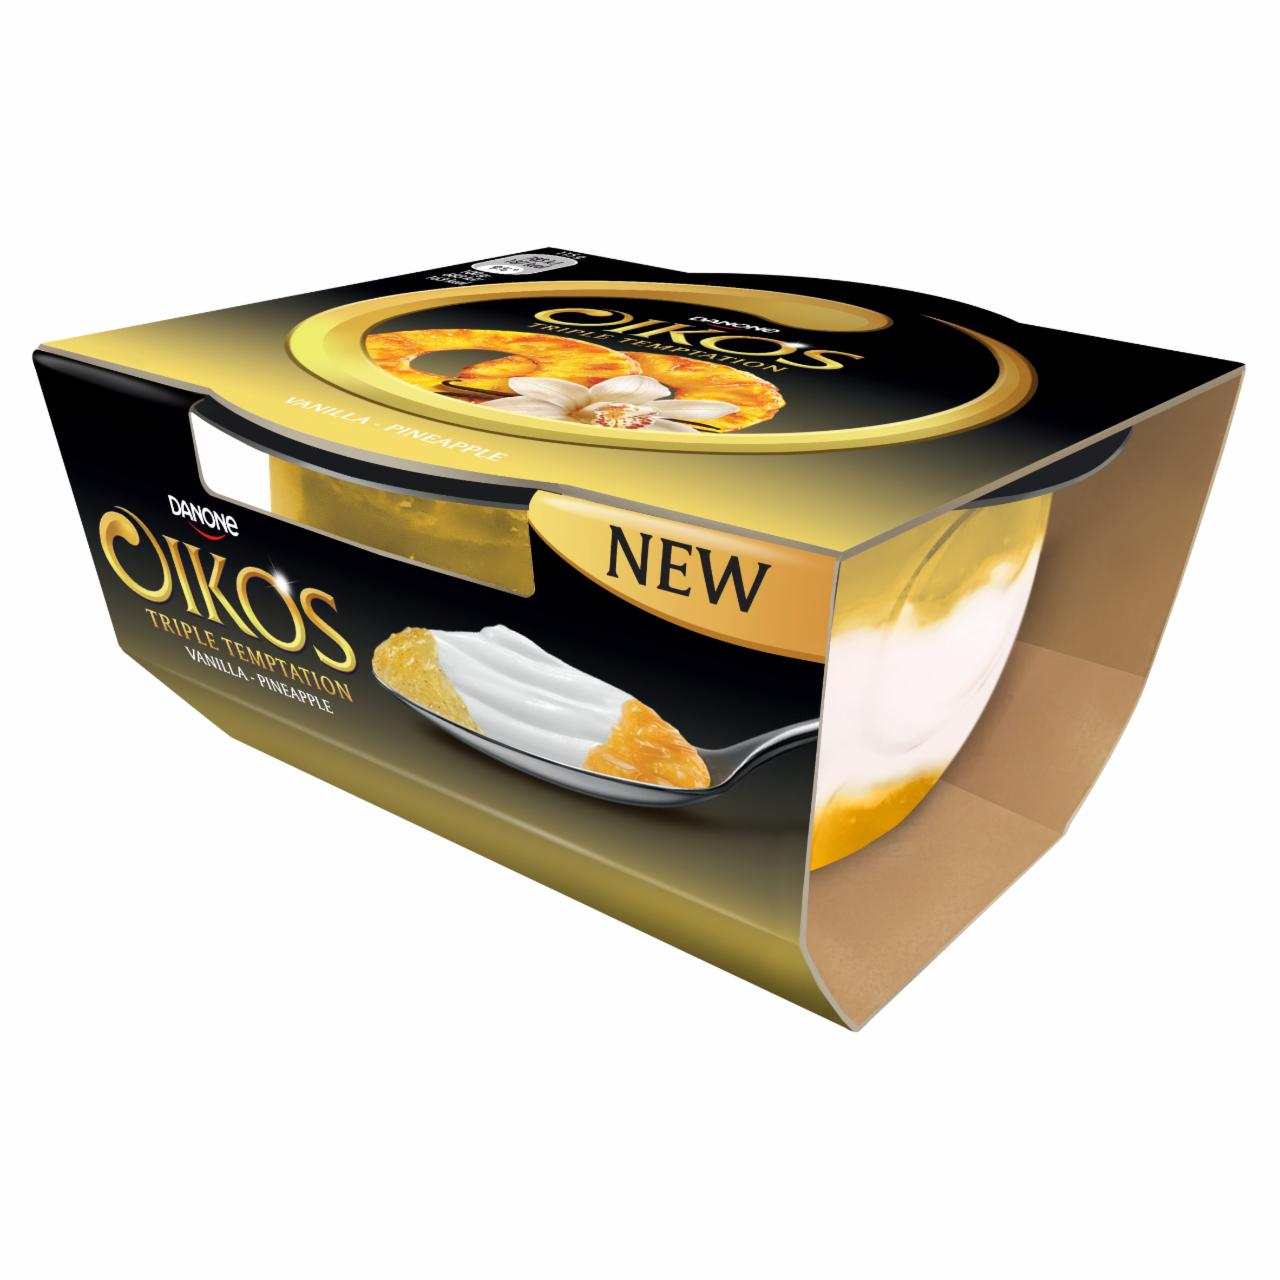 Képek - Danone Oikos Triple Temptation élőflórás görög krémjoghurt ananászos és vaníliaízű öntettel 115 g